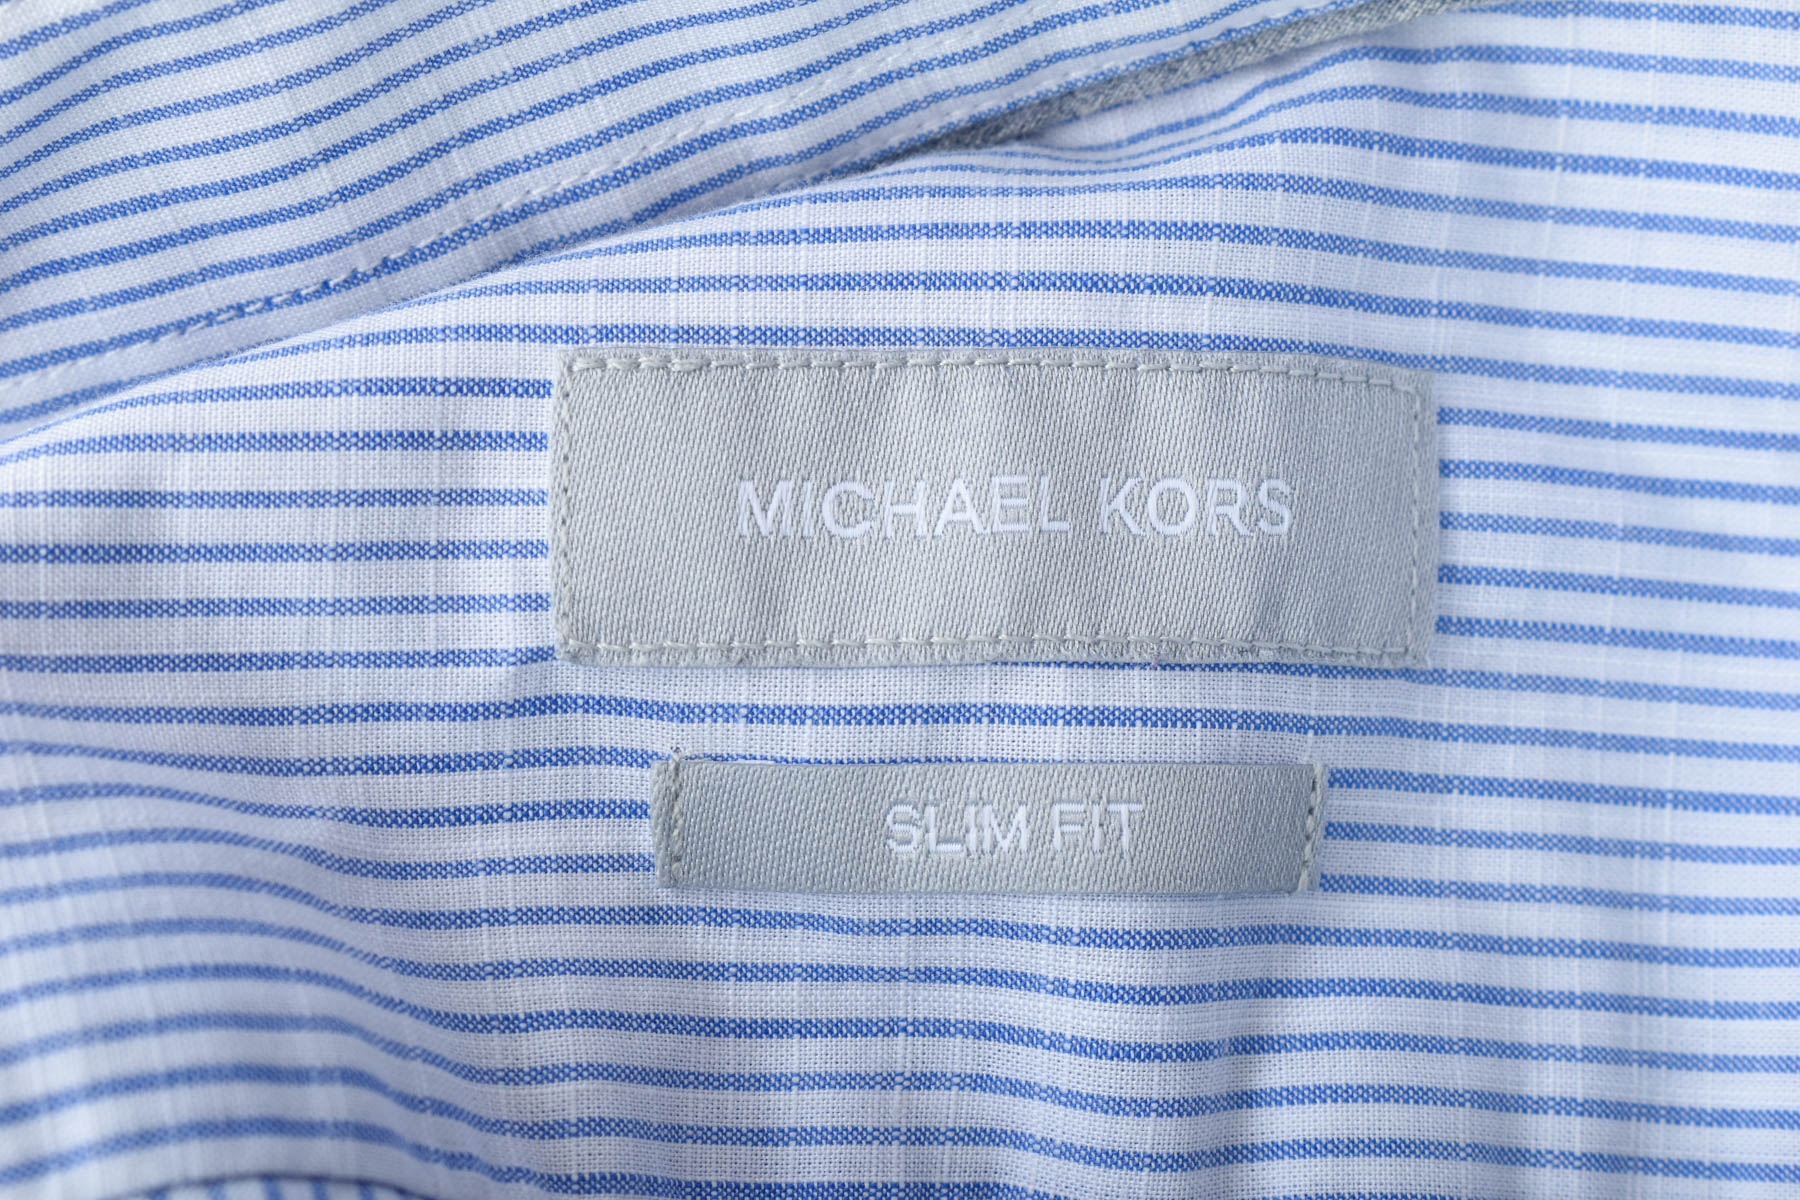 Ανδρικό πουκάμισο - Michael Kors - 2